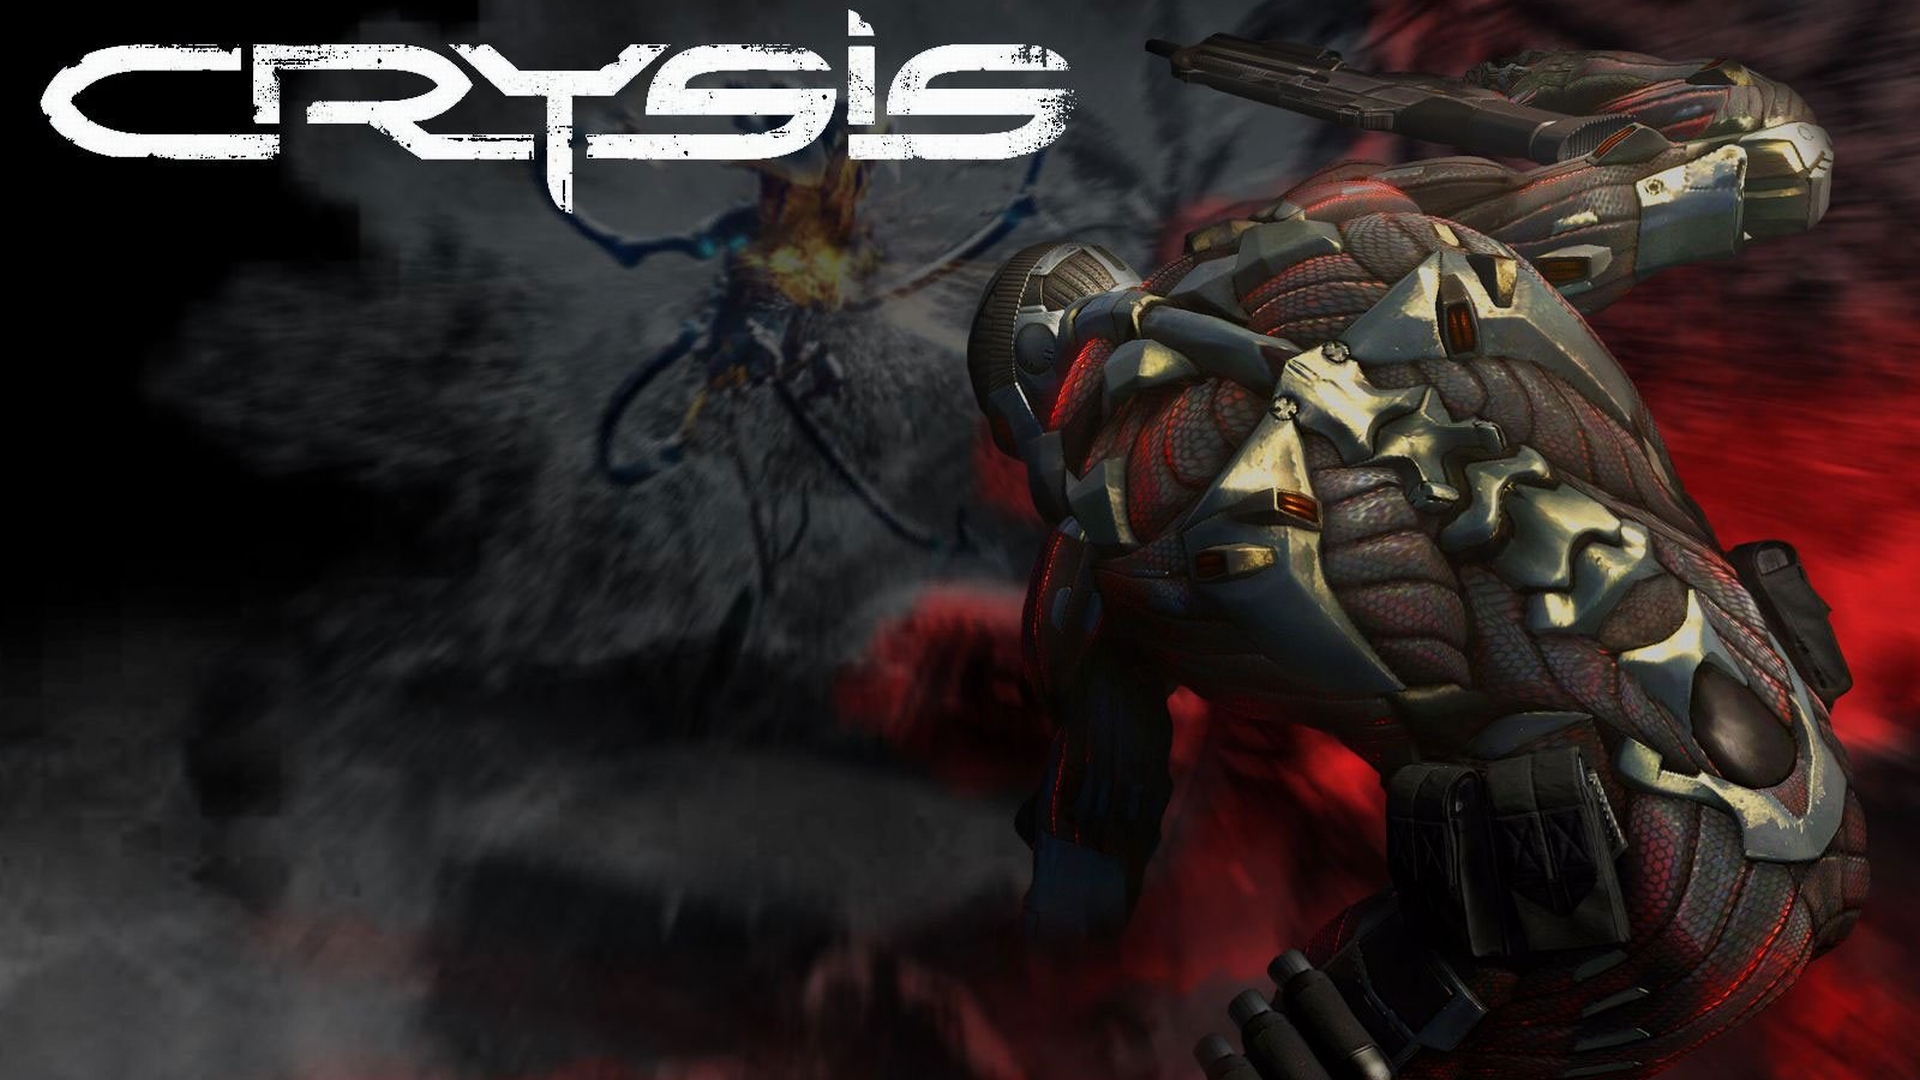 Descarga gratuita de fondo de pantalla para móvil de Crysis, Videojuego.